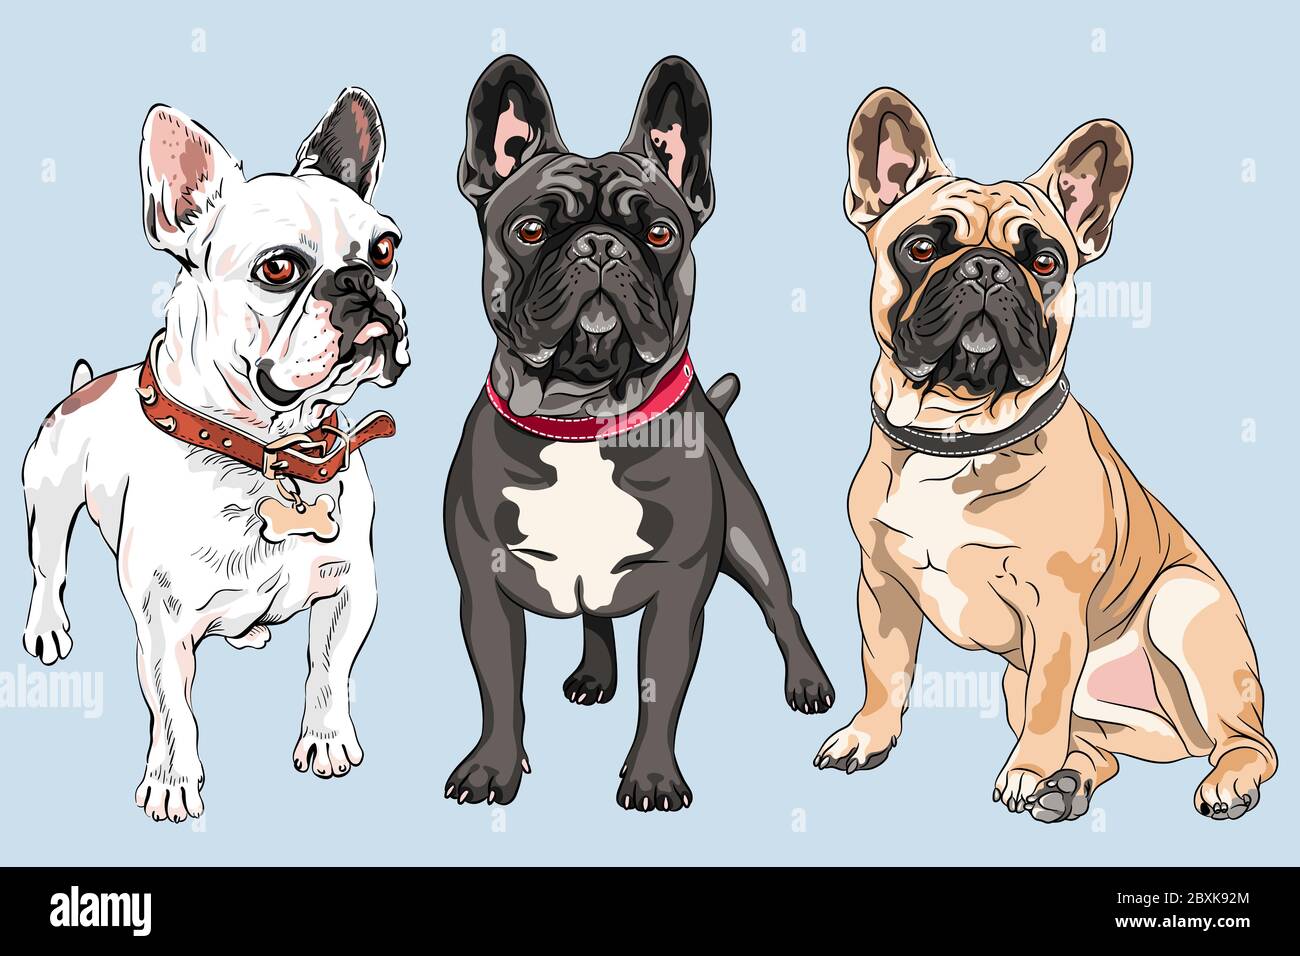 Vettore insieme di cani bianchi, fawn e neri razza Bulldog francese, la colorazione più comune Illustrazione Vettoriale